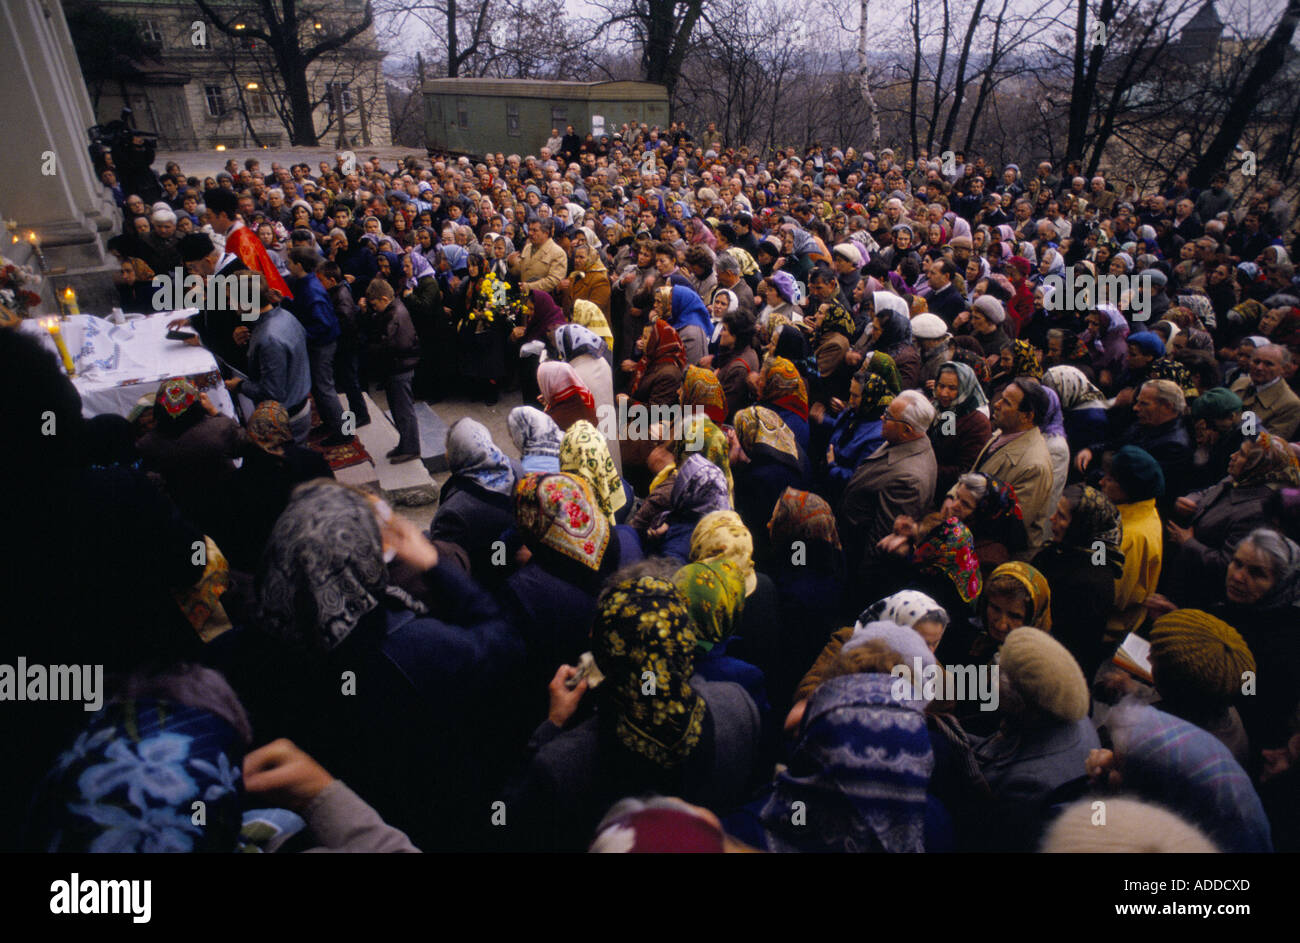 Konfessioneller Open-Air-Dienst in lemberg am 1.. November 1989 zum Gedenken an die Unabhängigkeitserklärung der Westukraine am selben Tag im Jahr 1918. Stockfoto